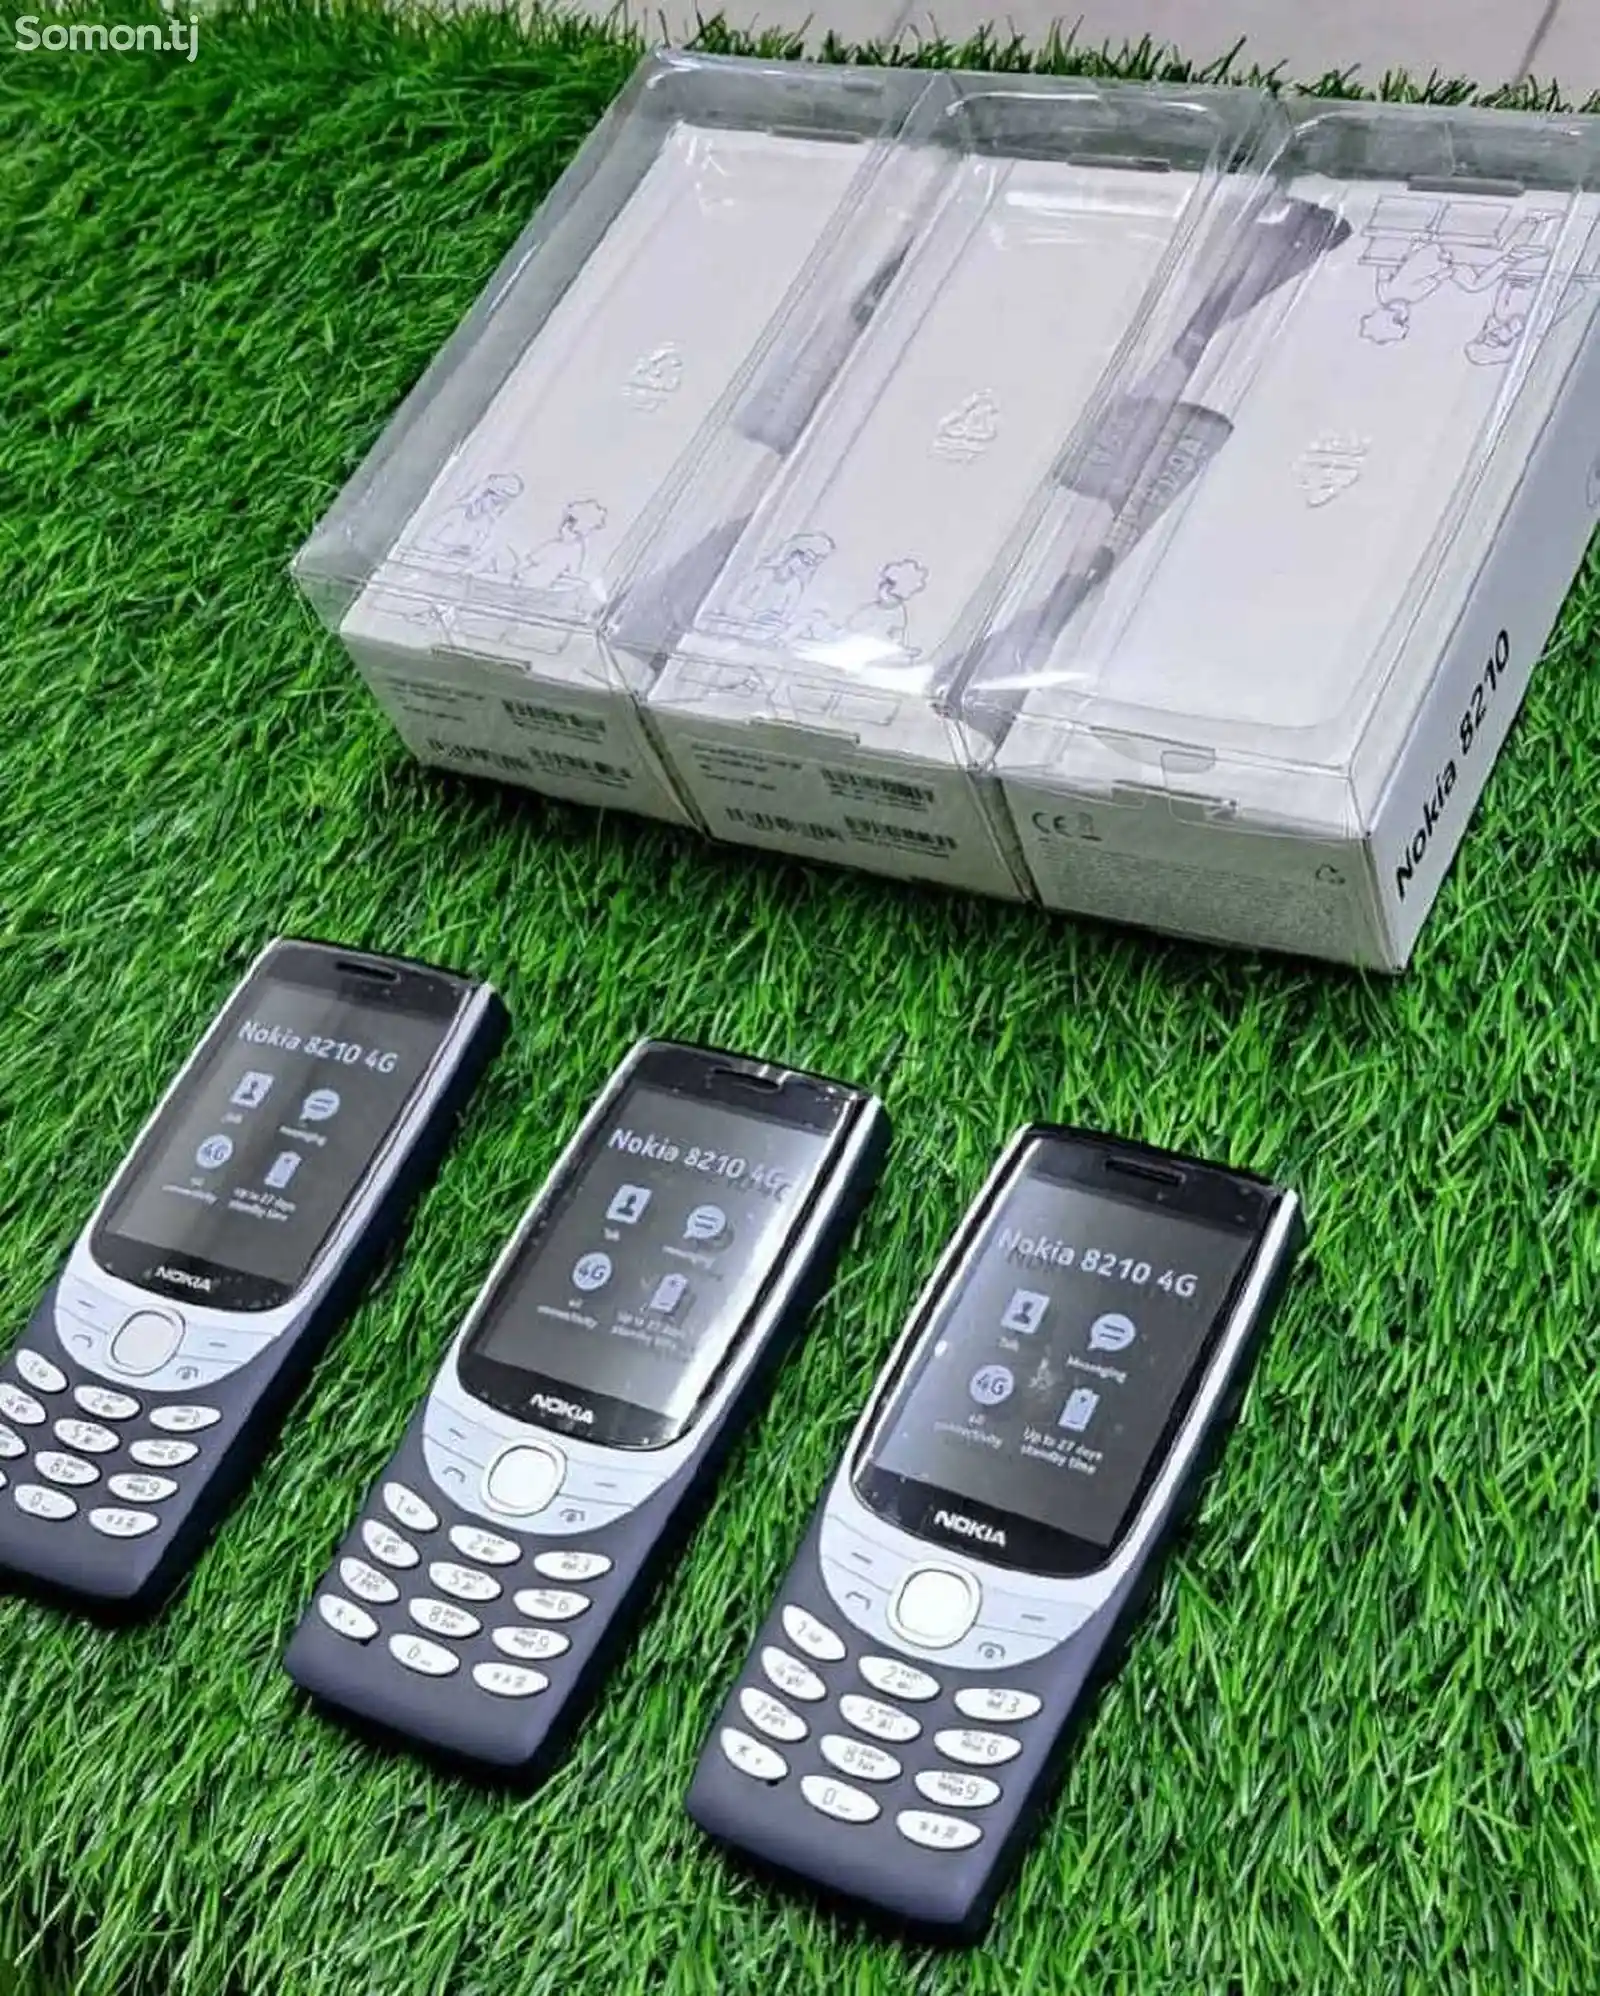 Nokia 8210-5